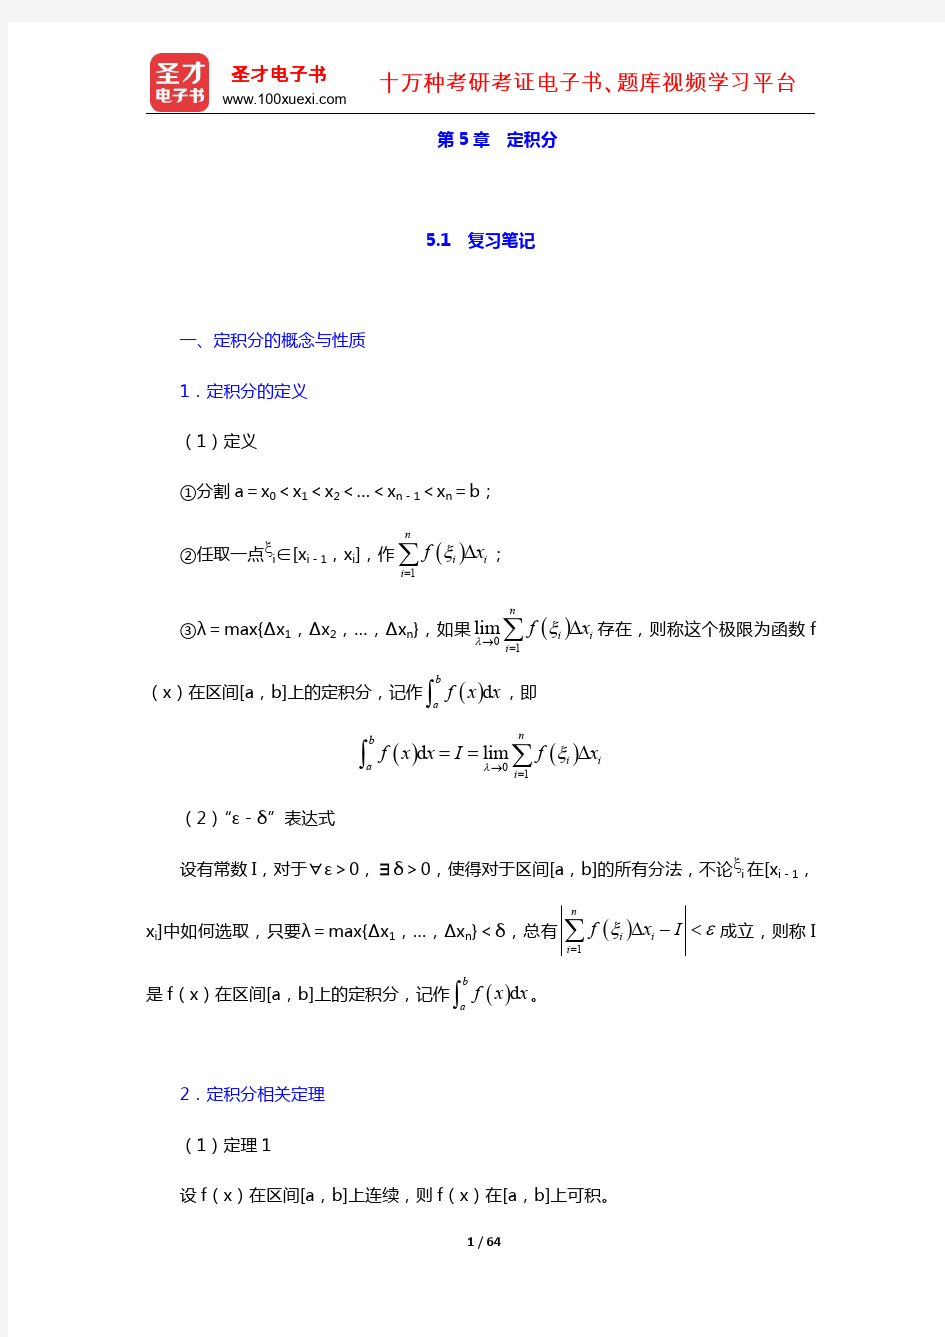 同济大学数学系《高等数学》(第7版)(上册)教材包含 笔记 课后习题 考研真题 定积分(圣才出品)